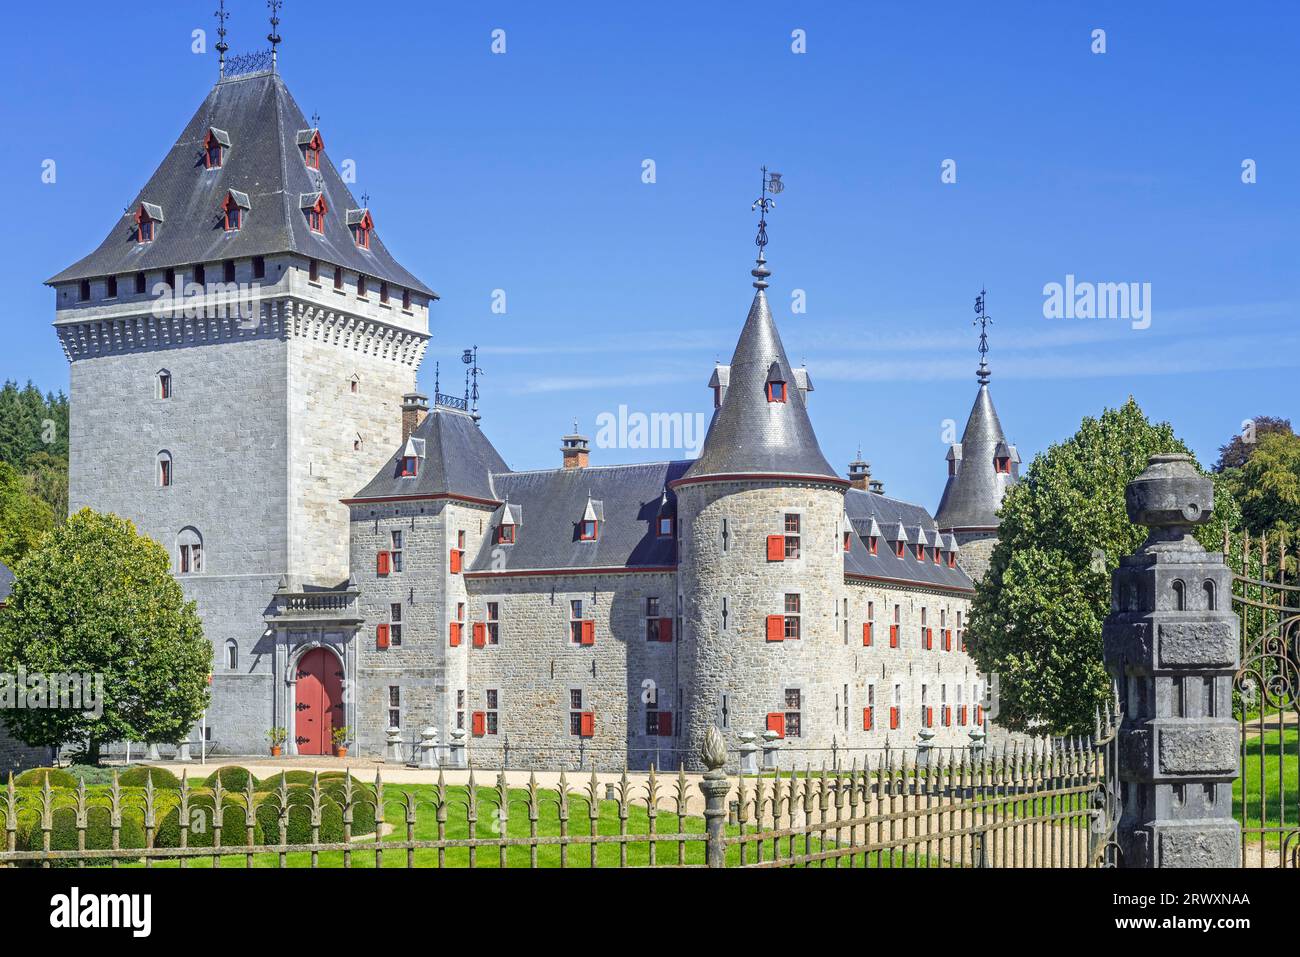 Château de Jemeppe du 13e siècle / Château d'Hargimont, à Hargimont près de Marche-en-Famenne, province de Luxembourg, Ardennes belges, Wallonie, Belgique Banque D'Images